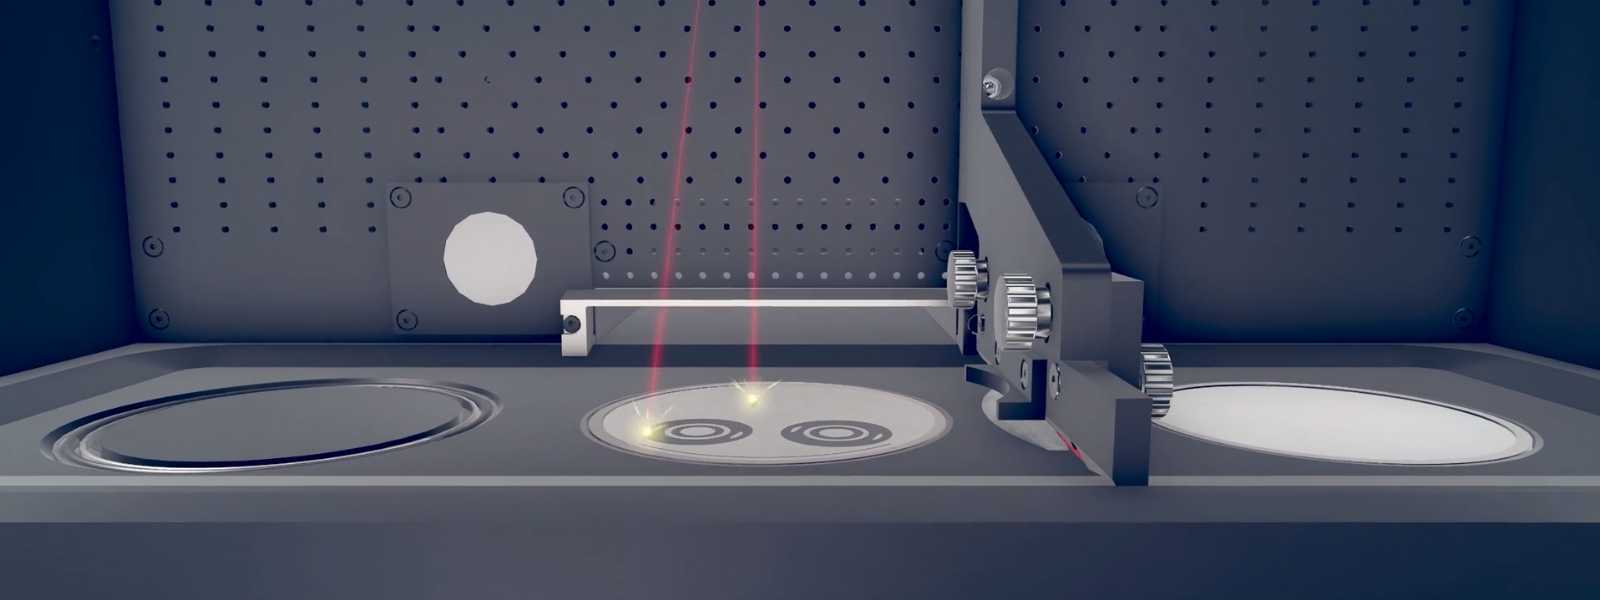 Mașină de printare CoCr Laser Metal Fusion TruPrint 1000